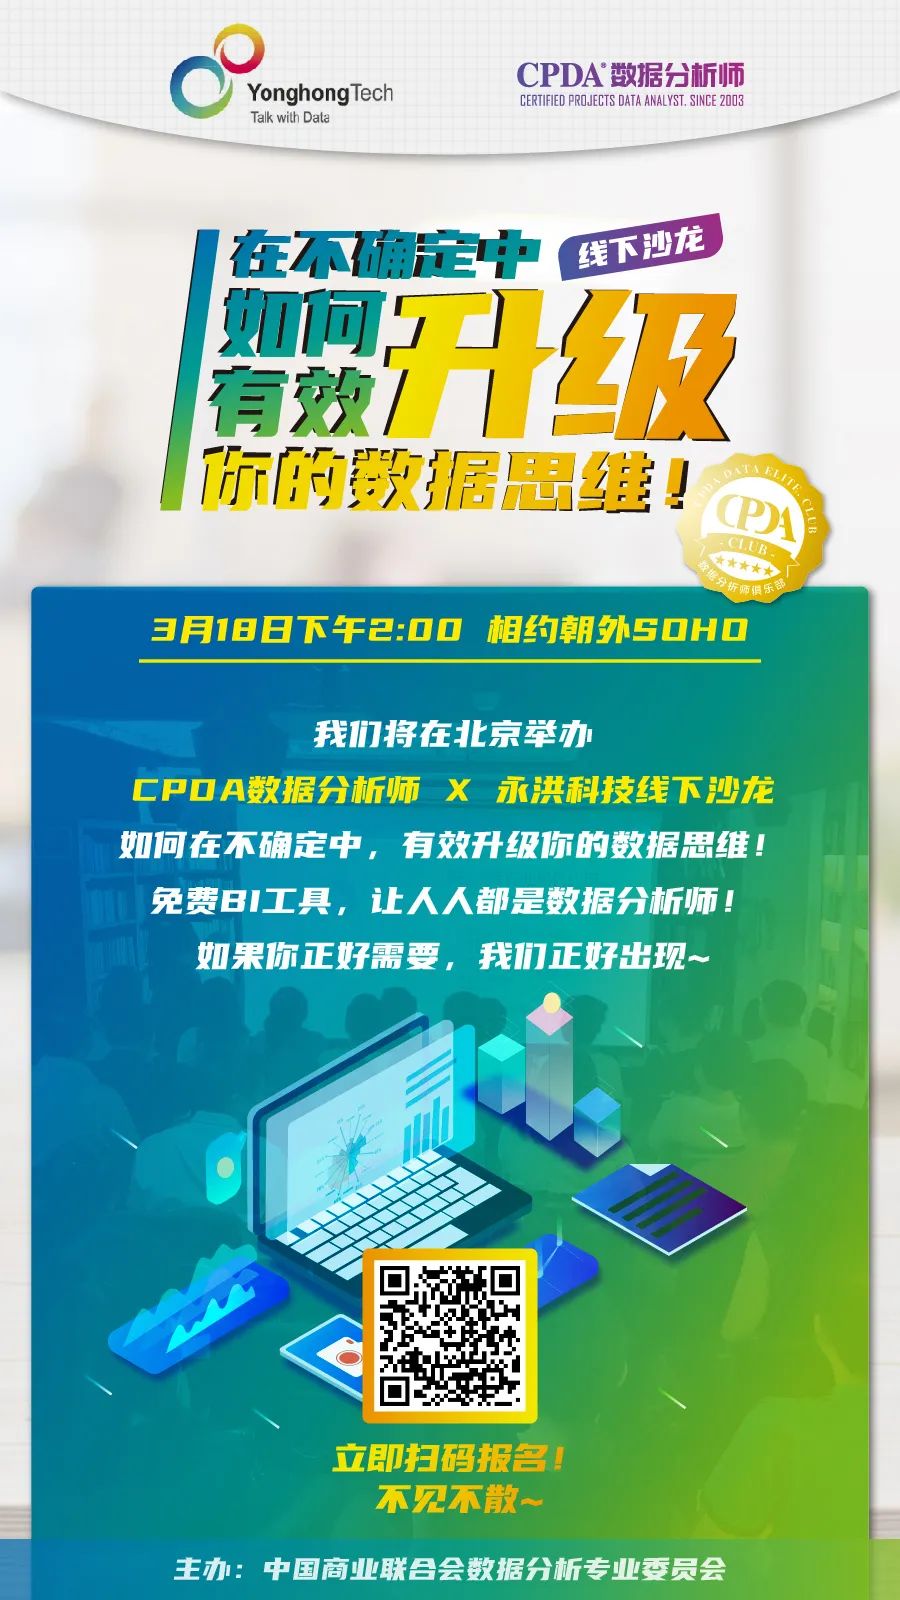 “CPDA数据分析师X永洪科技”线下沙龙将于3月18日在北京举办